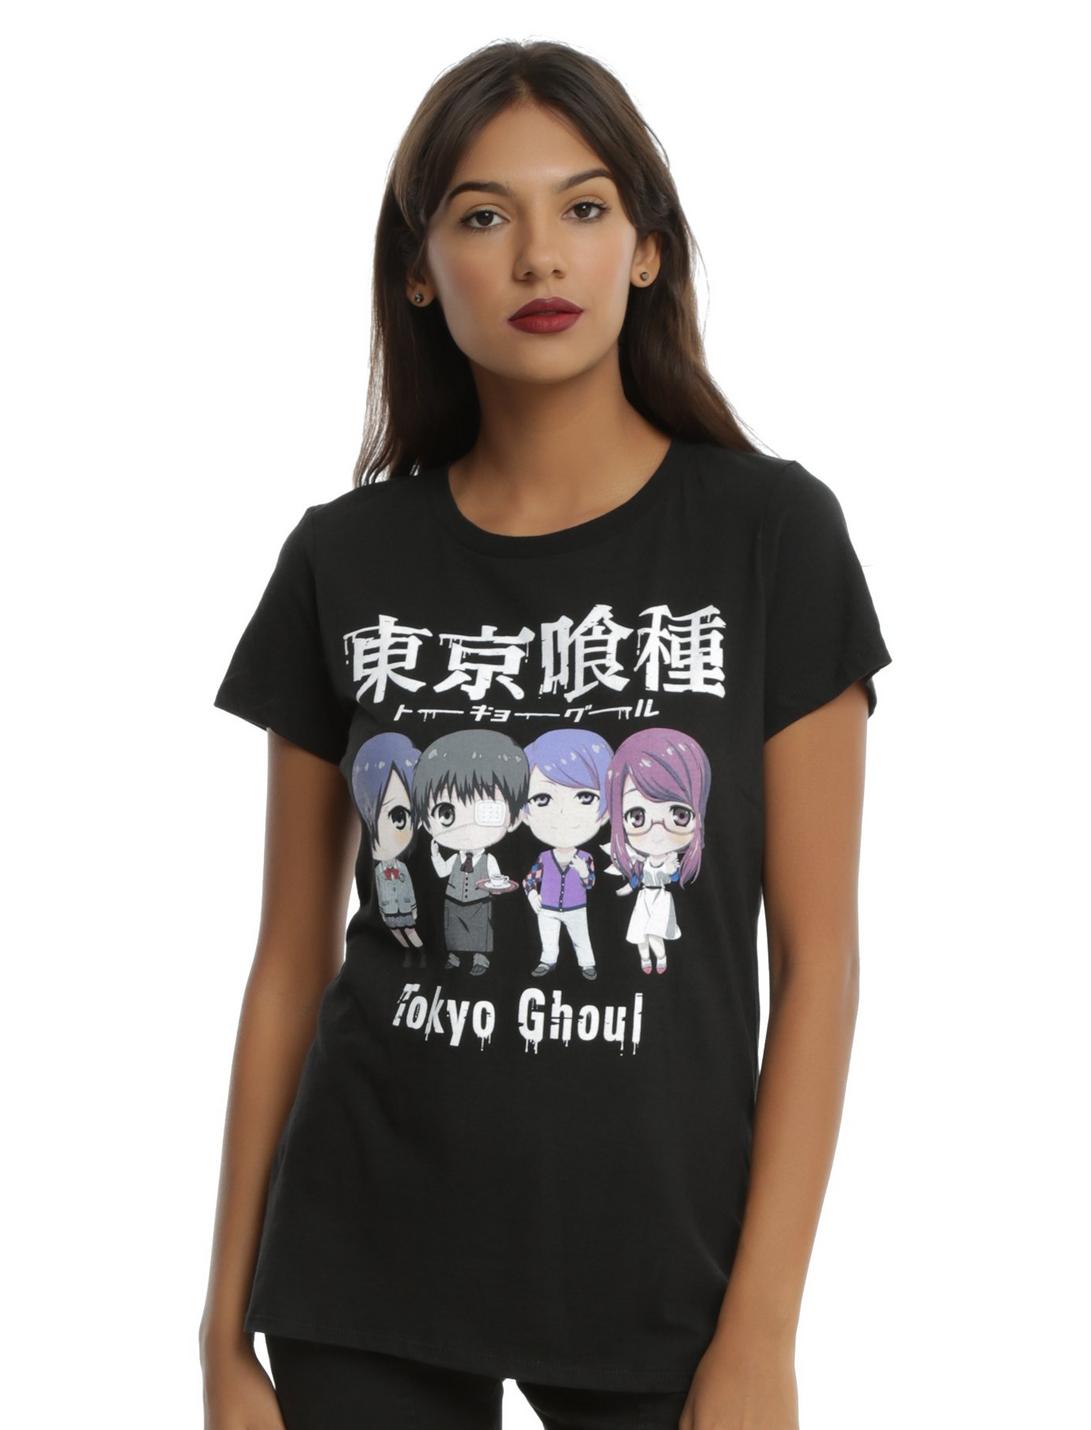 Tokyo Ghoul Chibi Characters Girls T-Shirt, BLACK, hi-res